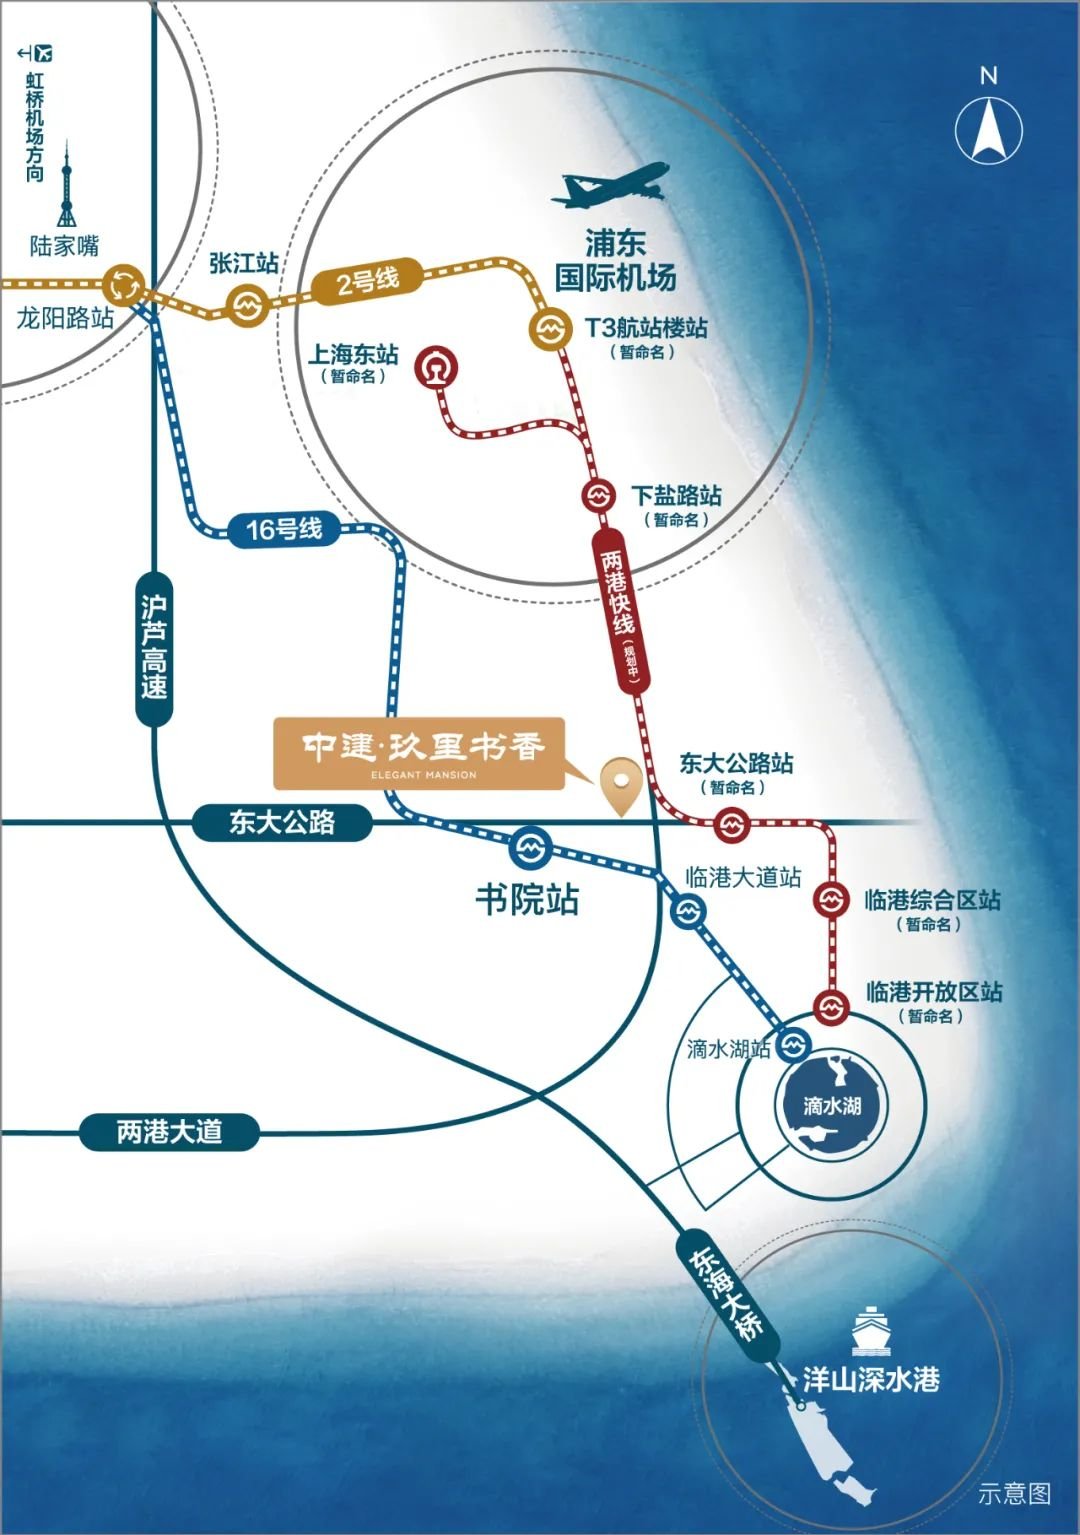 搭乘两港快线预期15分钟内连通浦东机场与临港